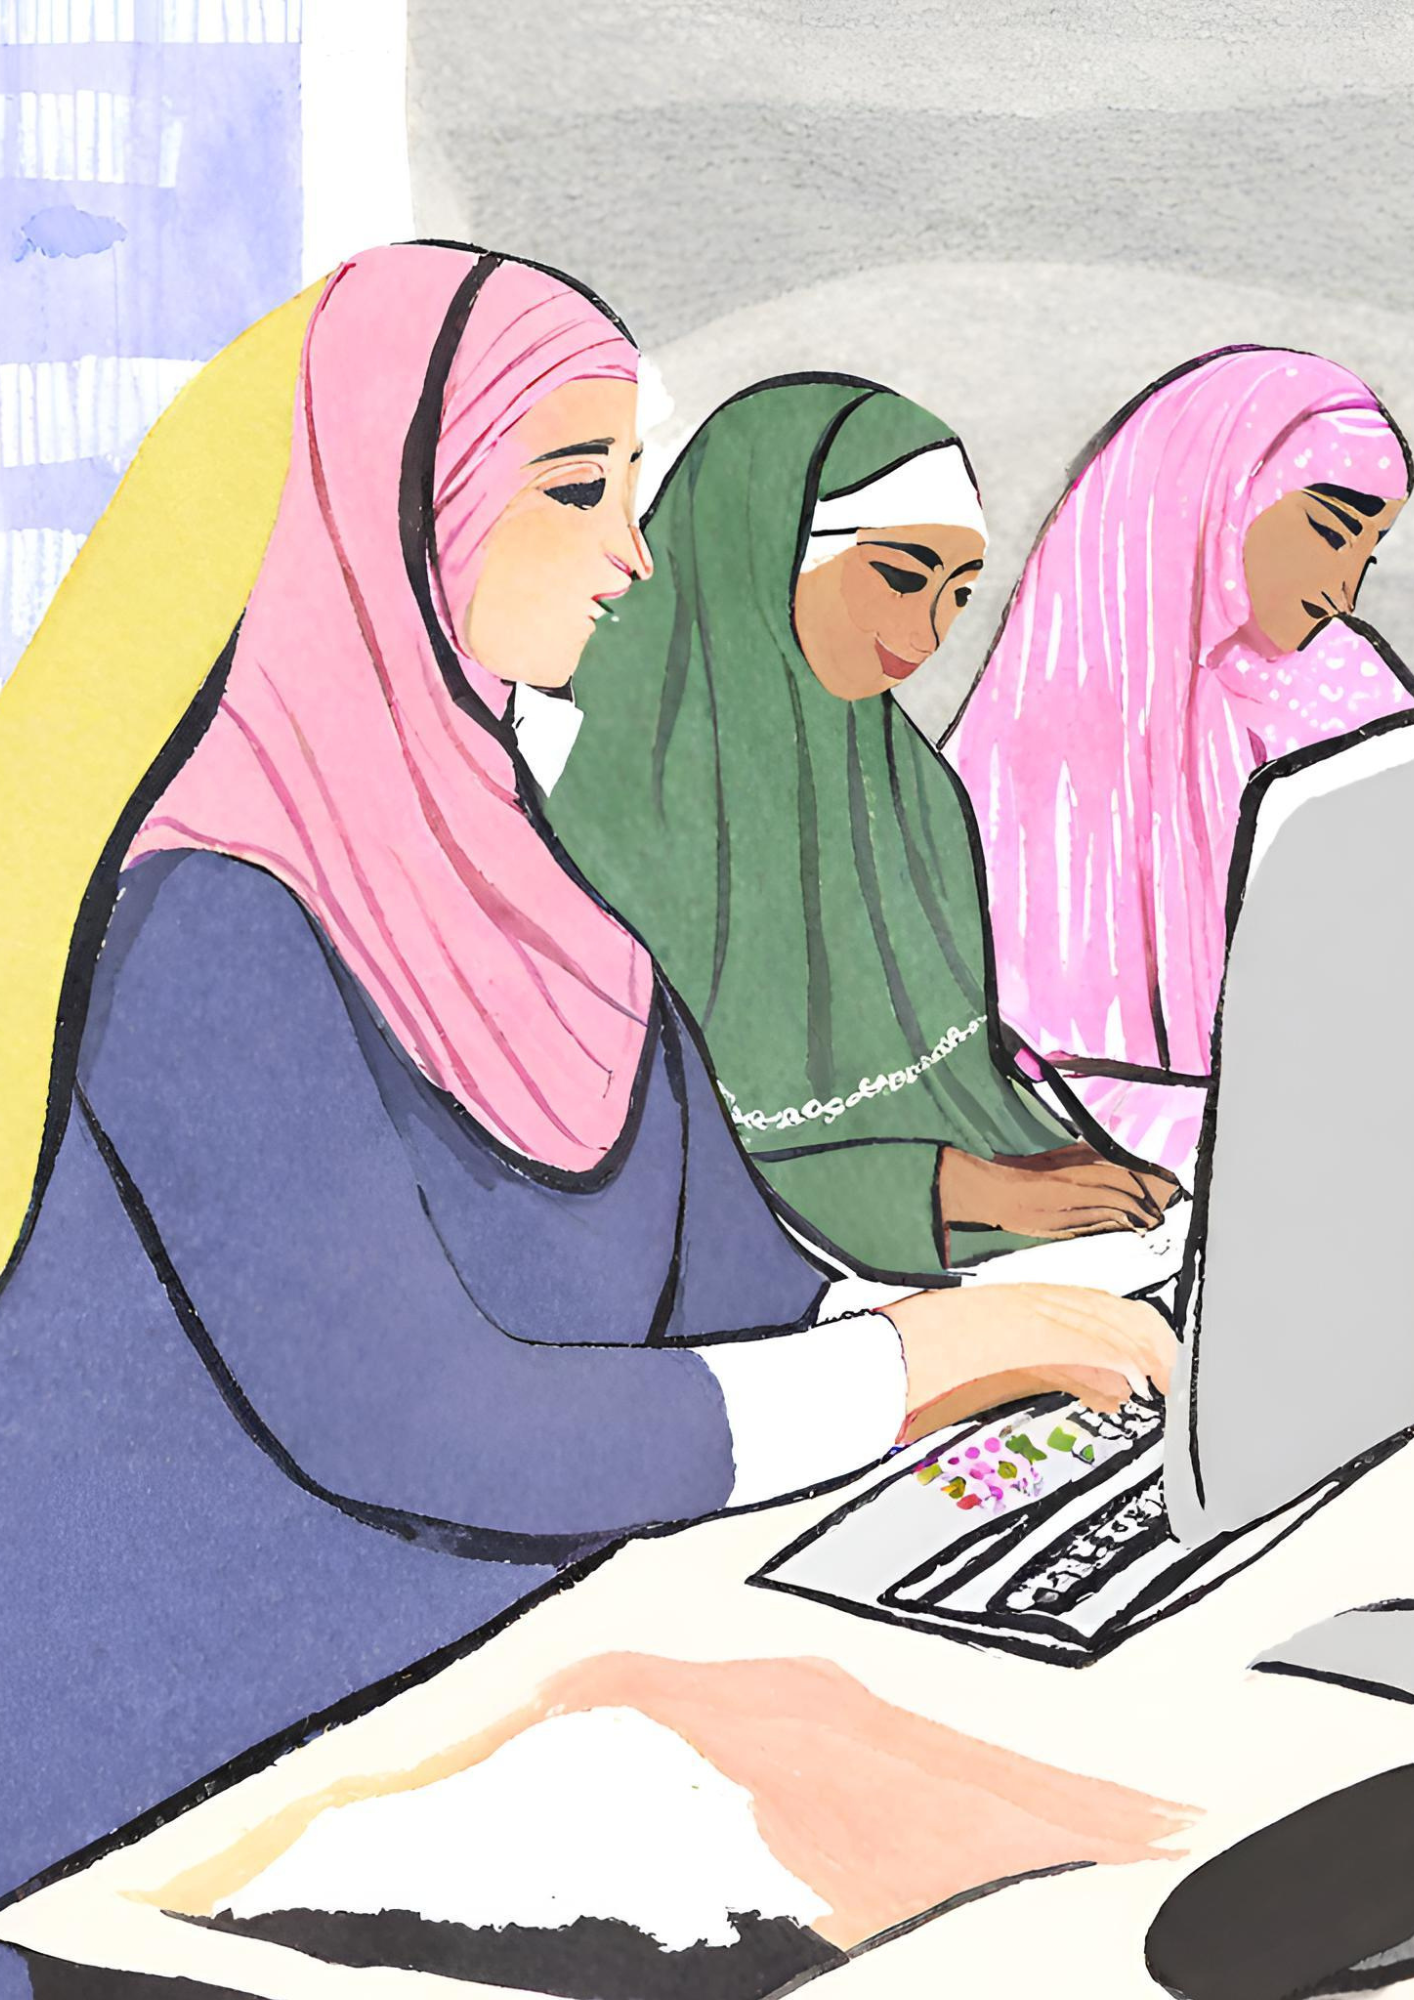 Religious Coping among Working Muslim Women in Yogyakarta, Indonesia